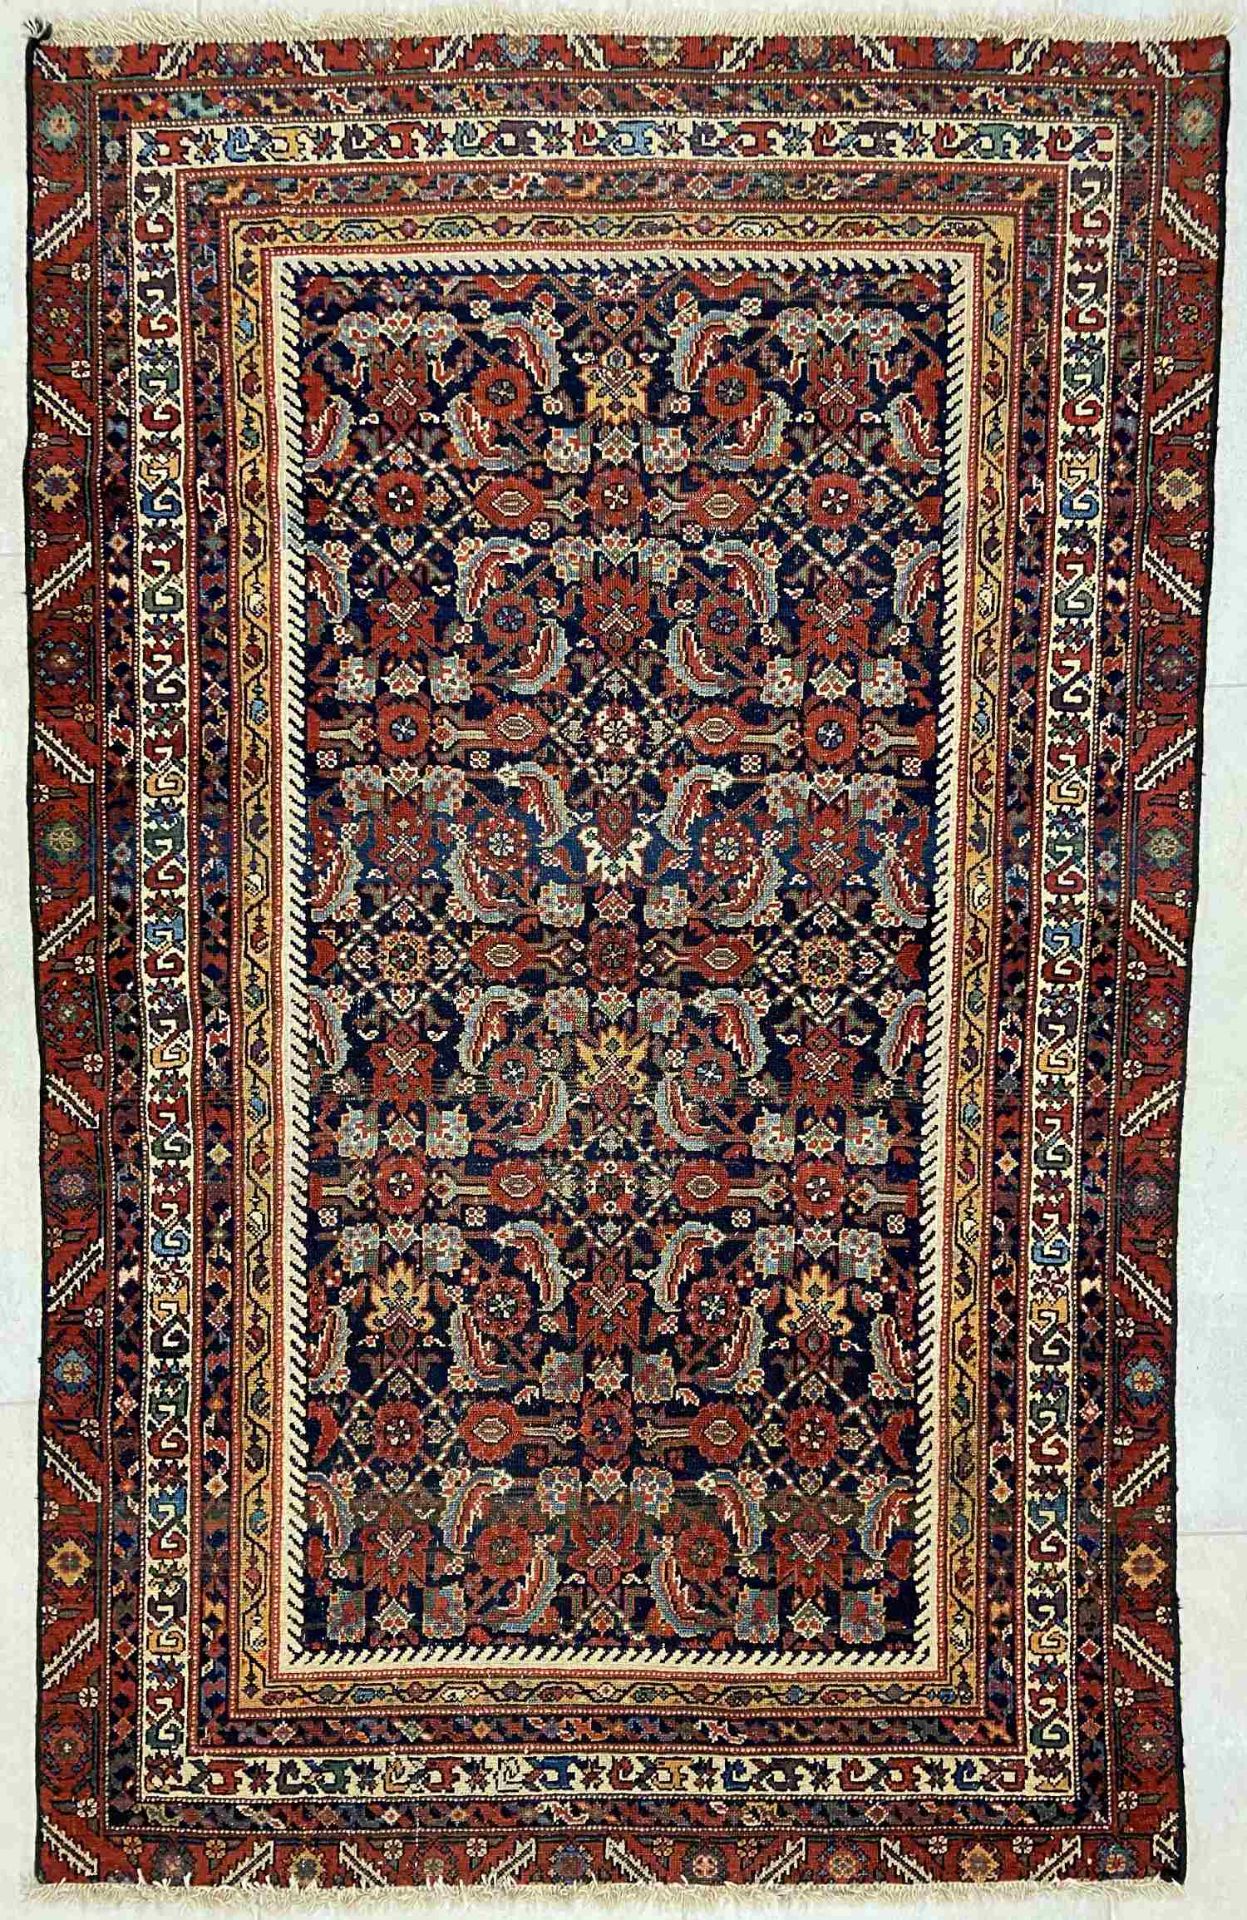 Nomadenteppich, Herkunft unbekannt - wohl Persien